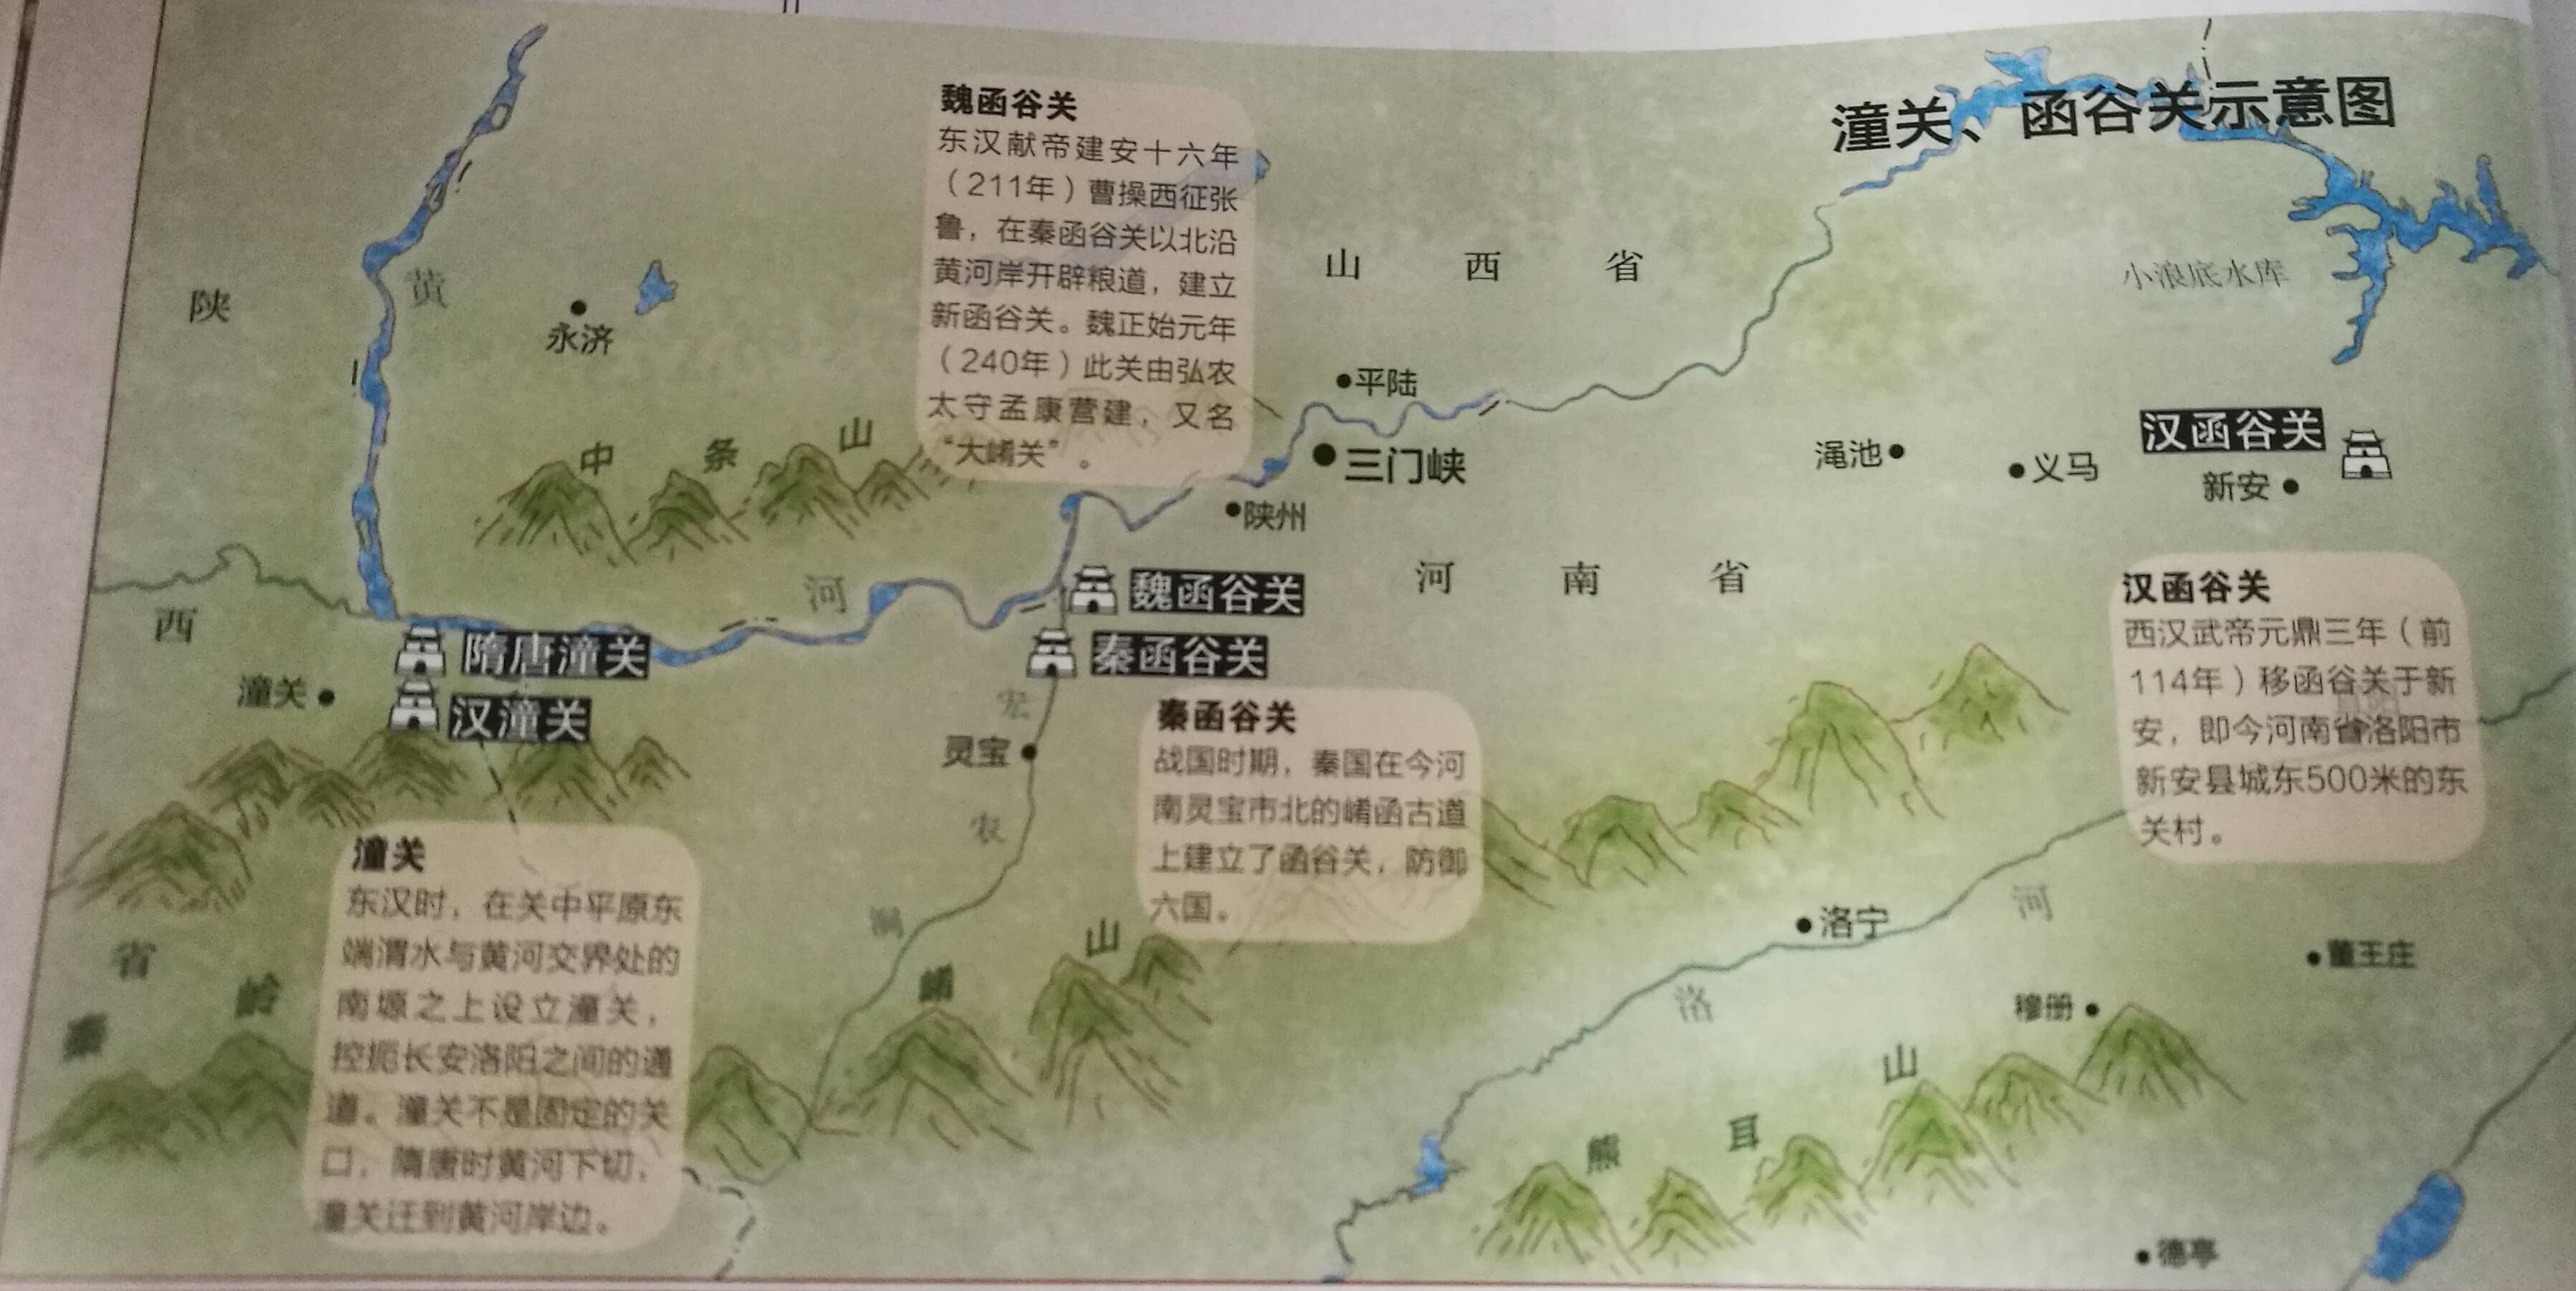 古代函谷关地图图片